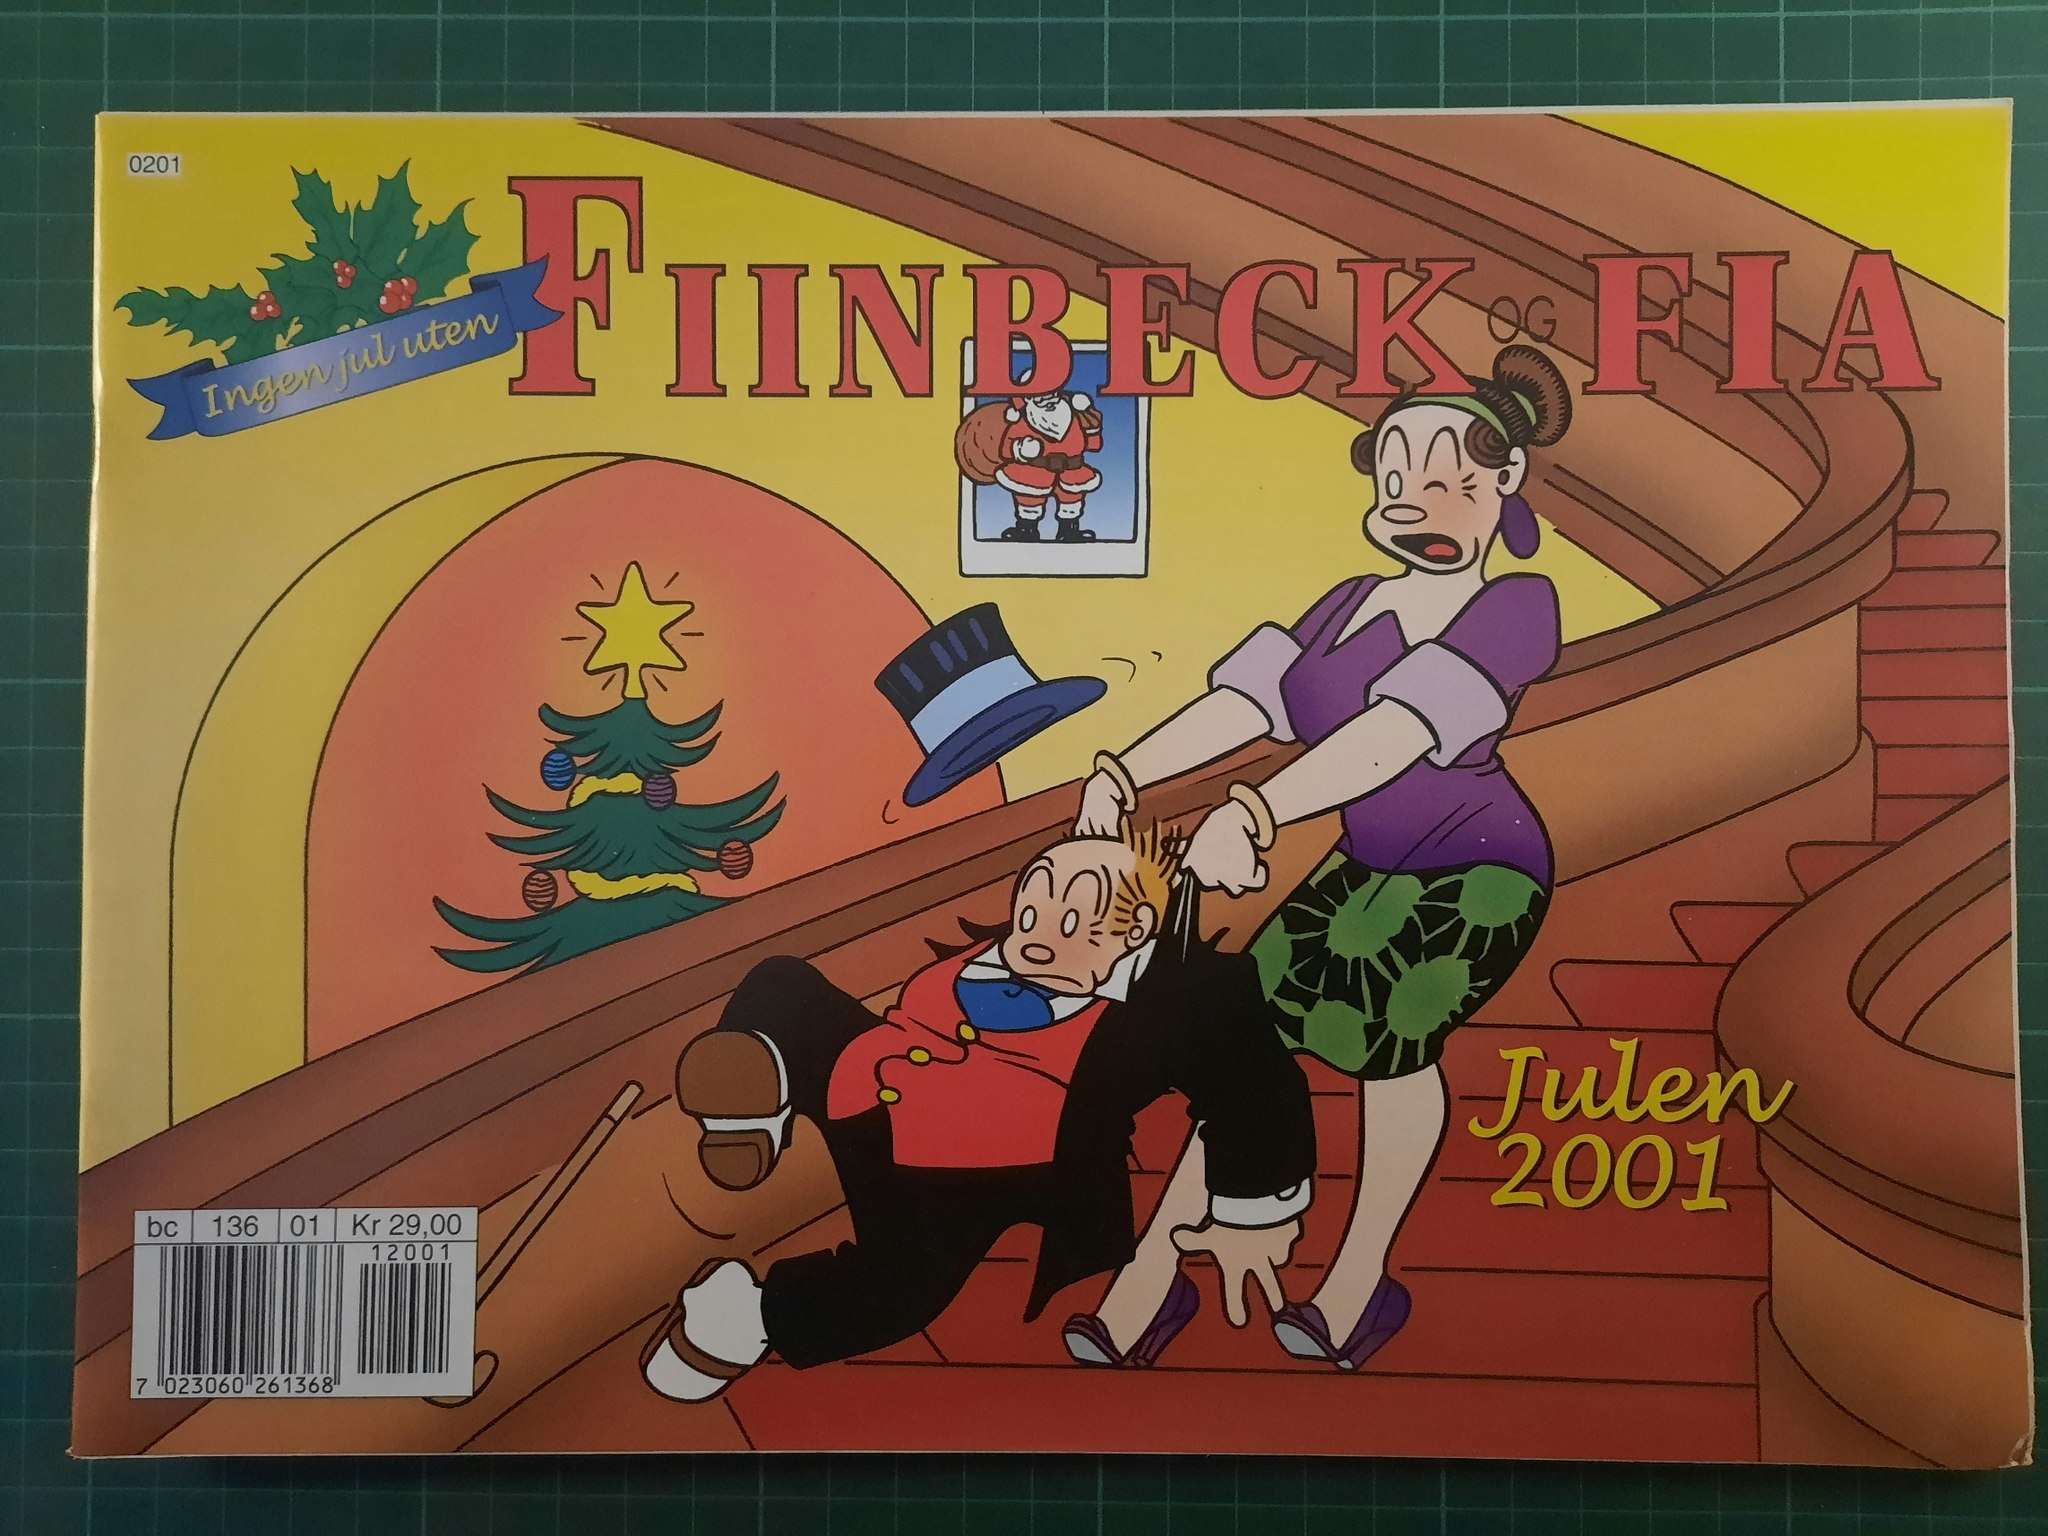 Fiinbeck og Fia 2001